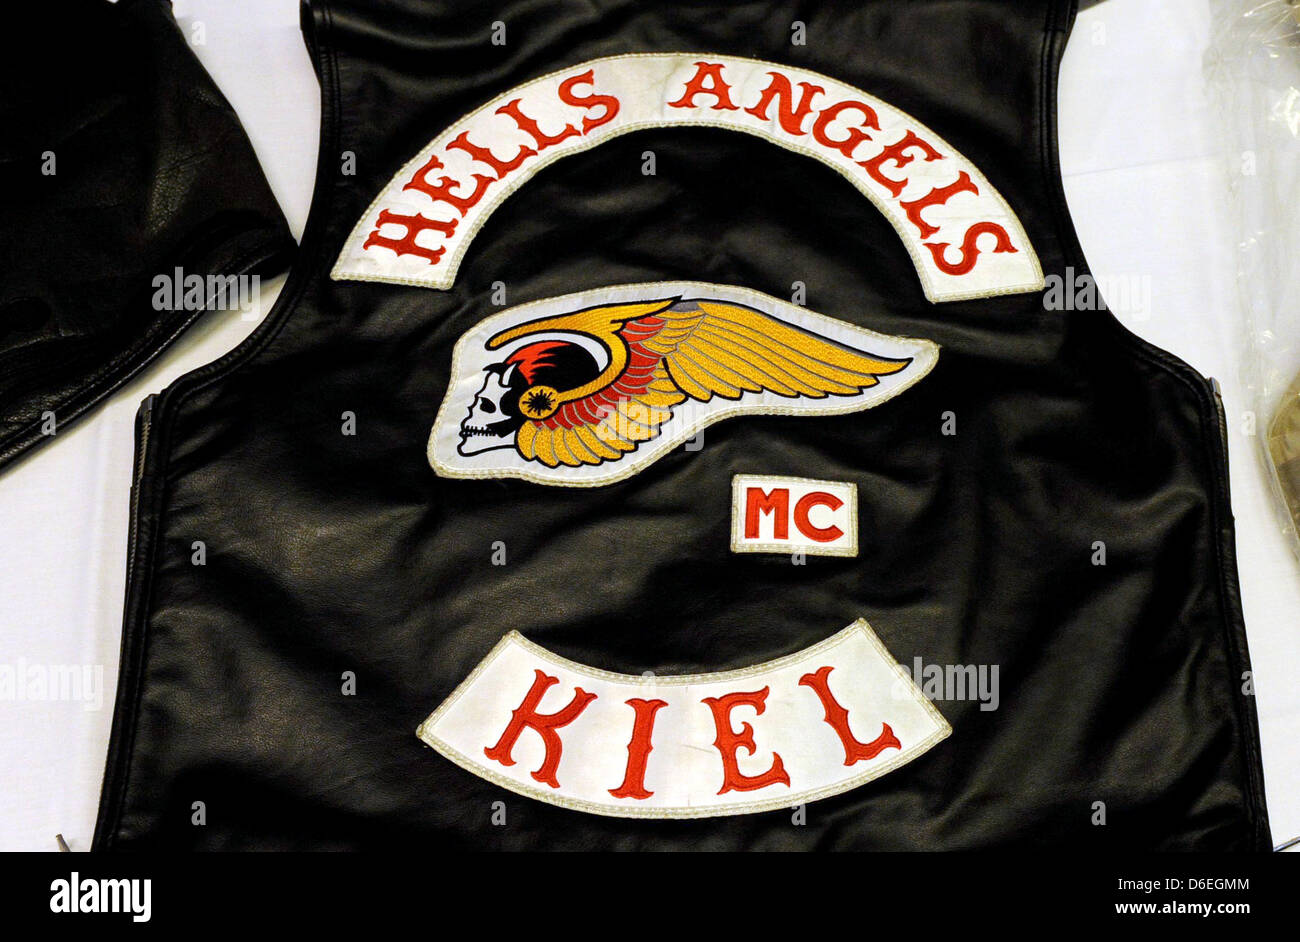 Pruebas para ser miembro de Hells Angels: requisitos y pasos